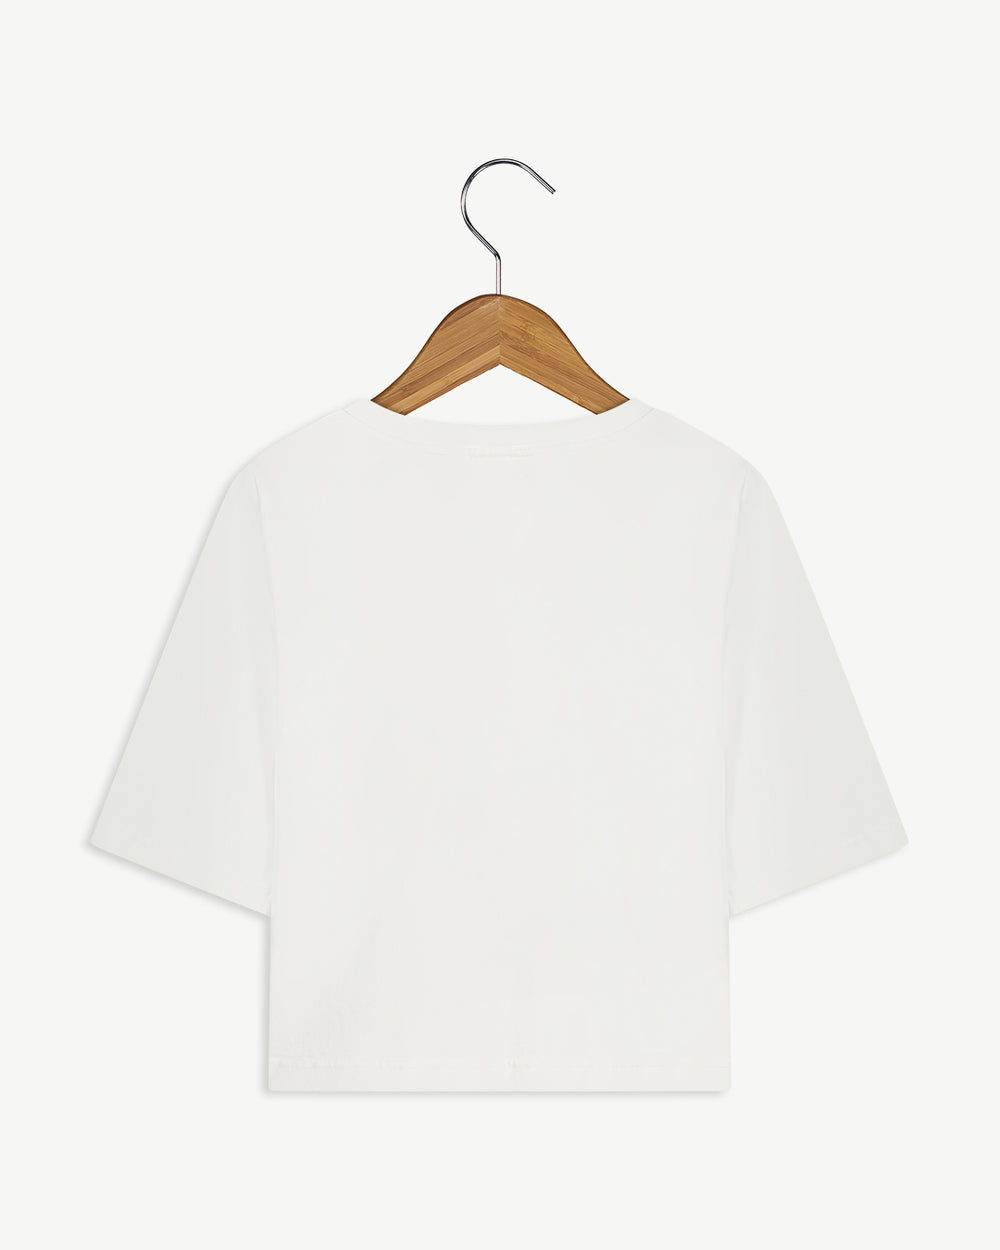 New Optimist womenswear RONDINE T-shirt OPTIC WHITE